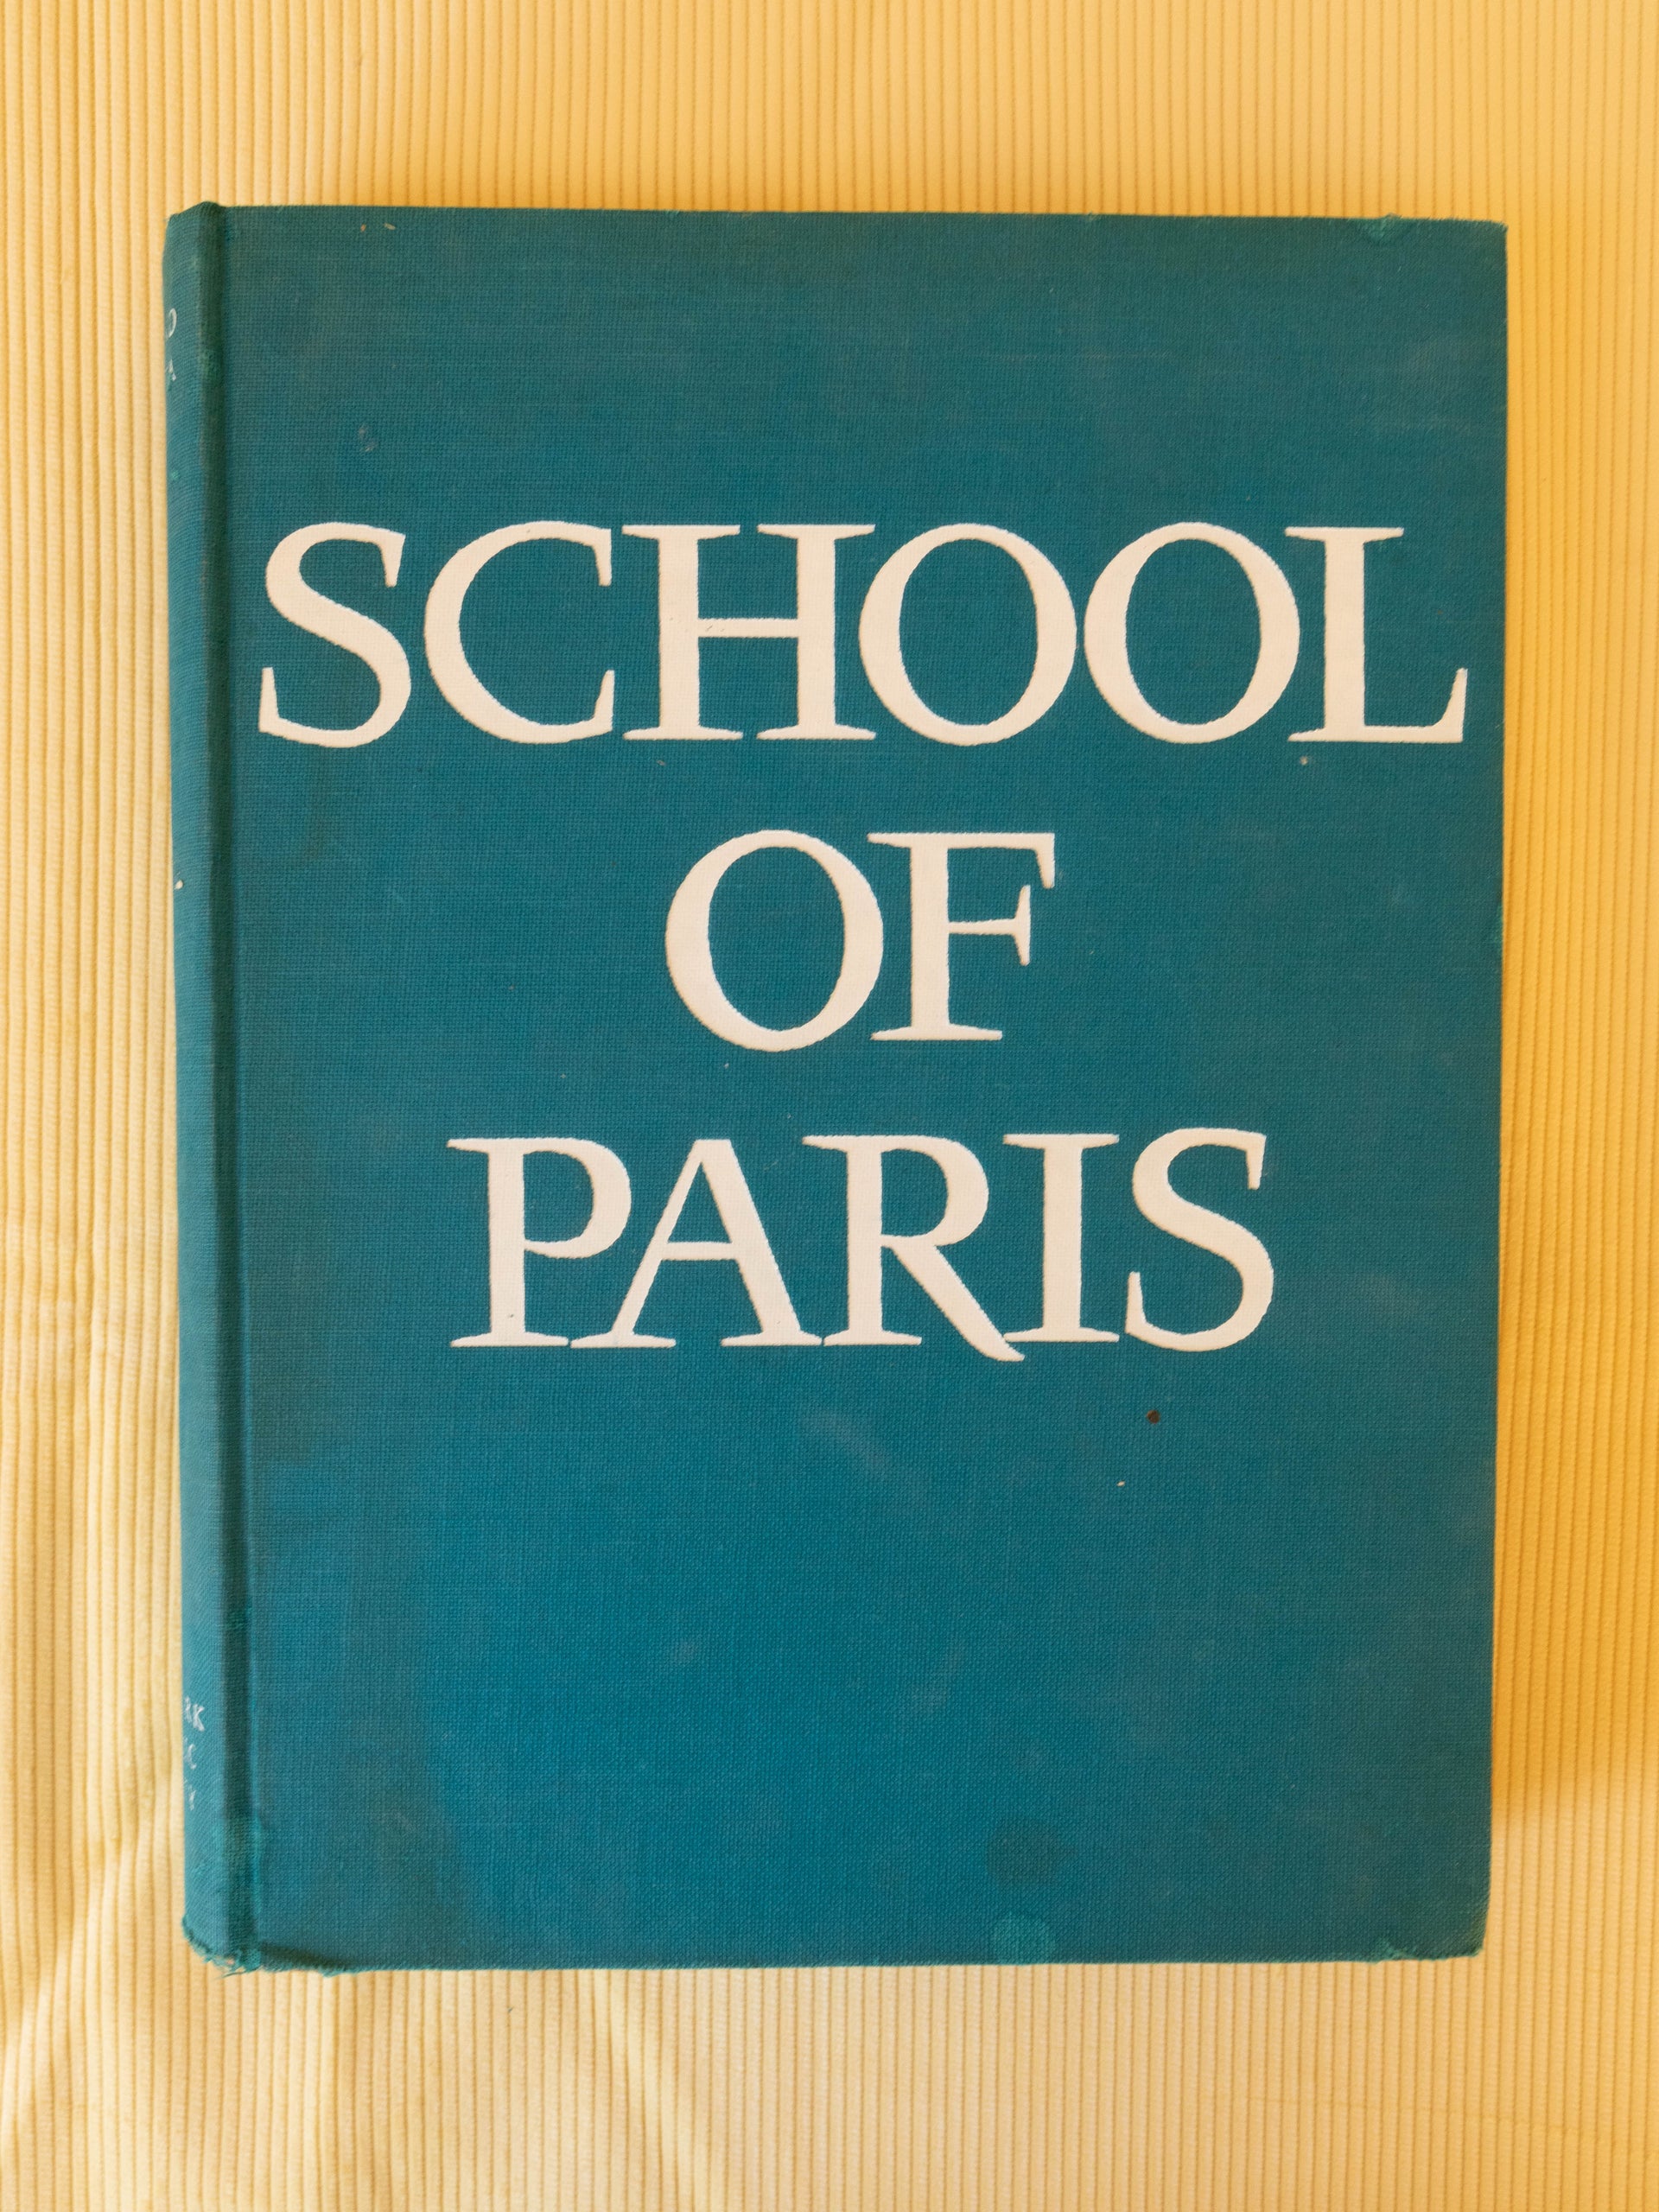 School of Paris